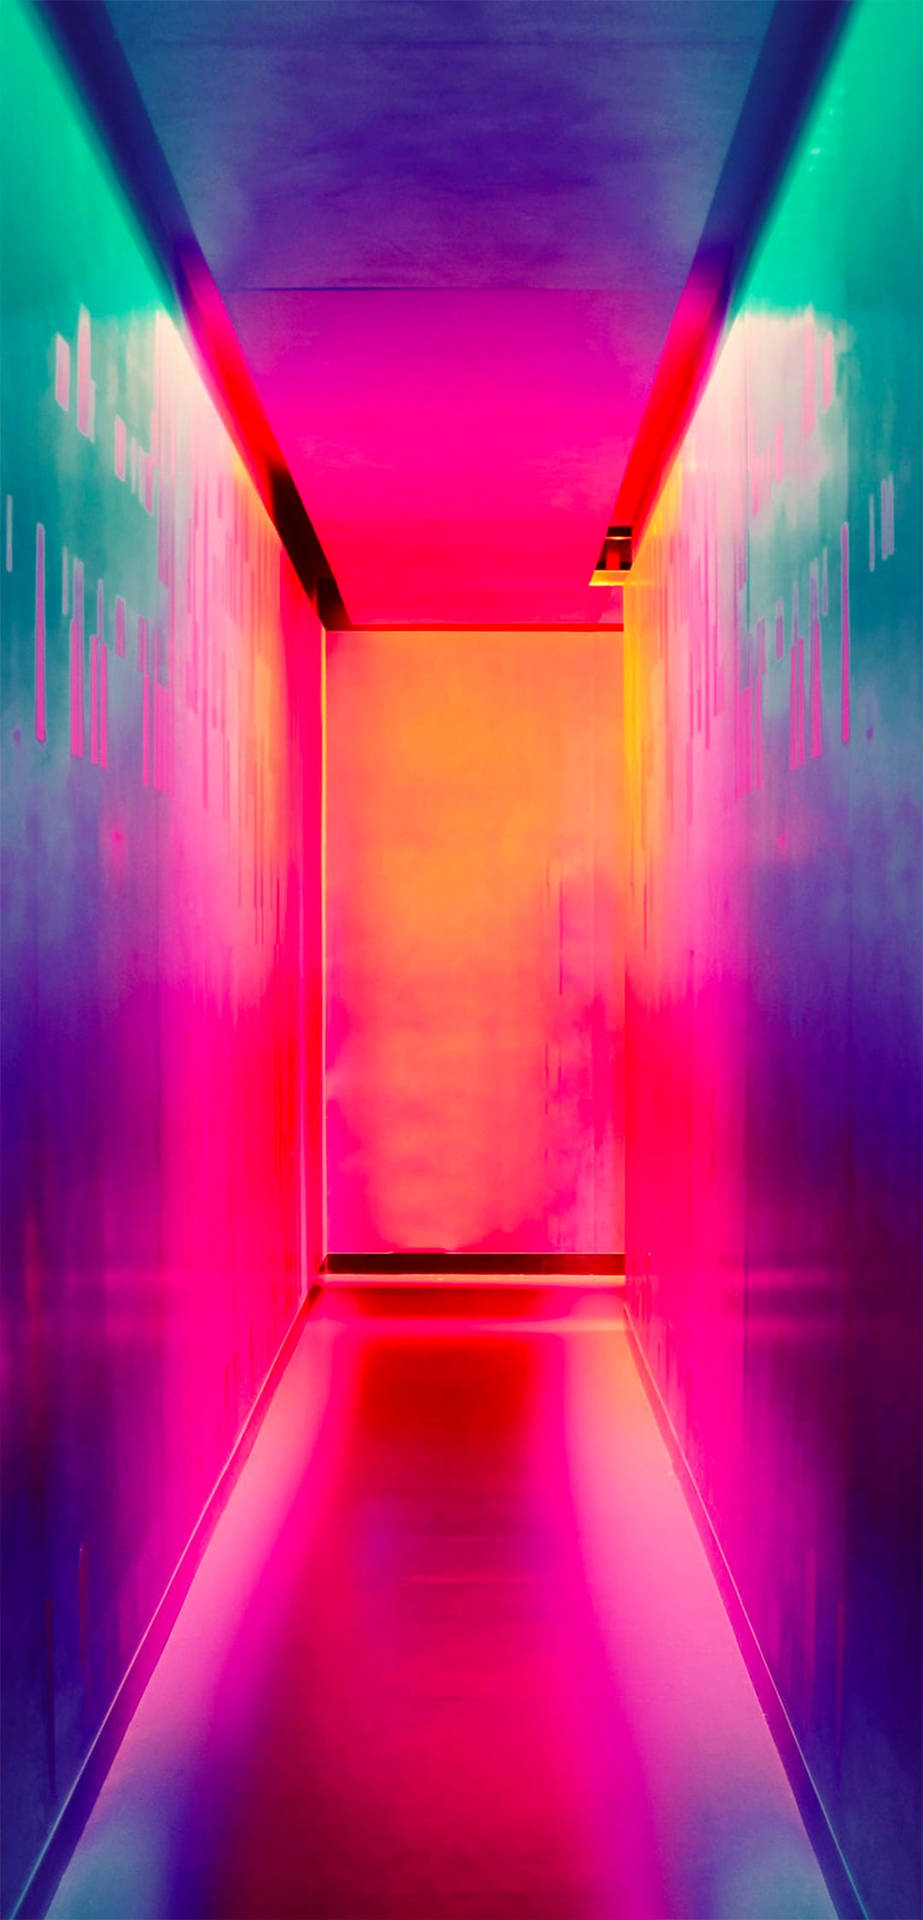 Poco X2 Multicolored Hallway